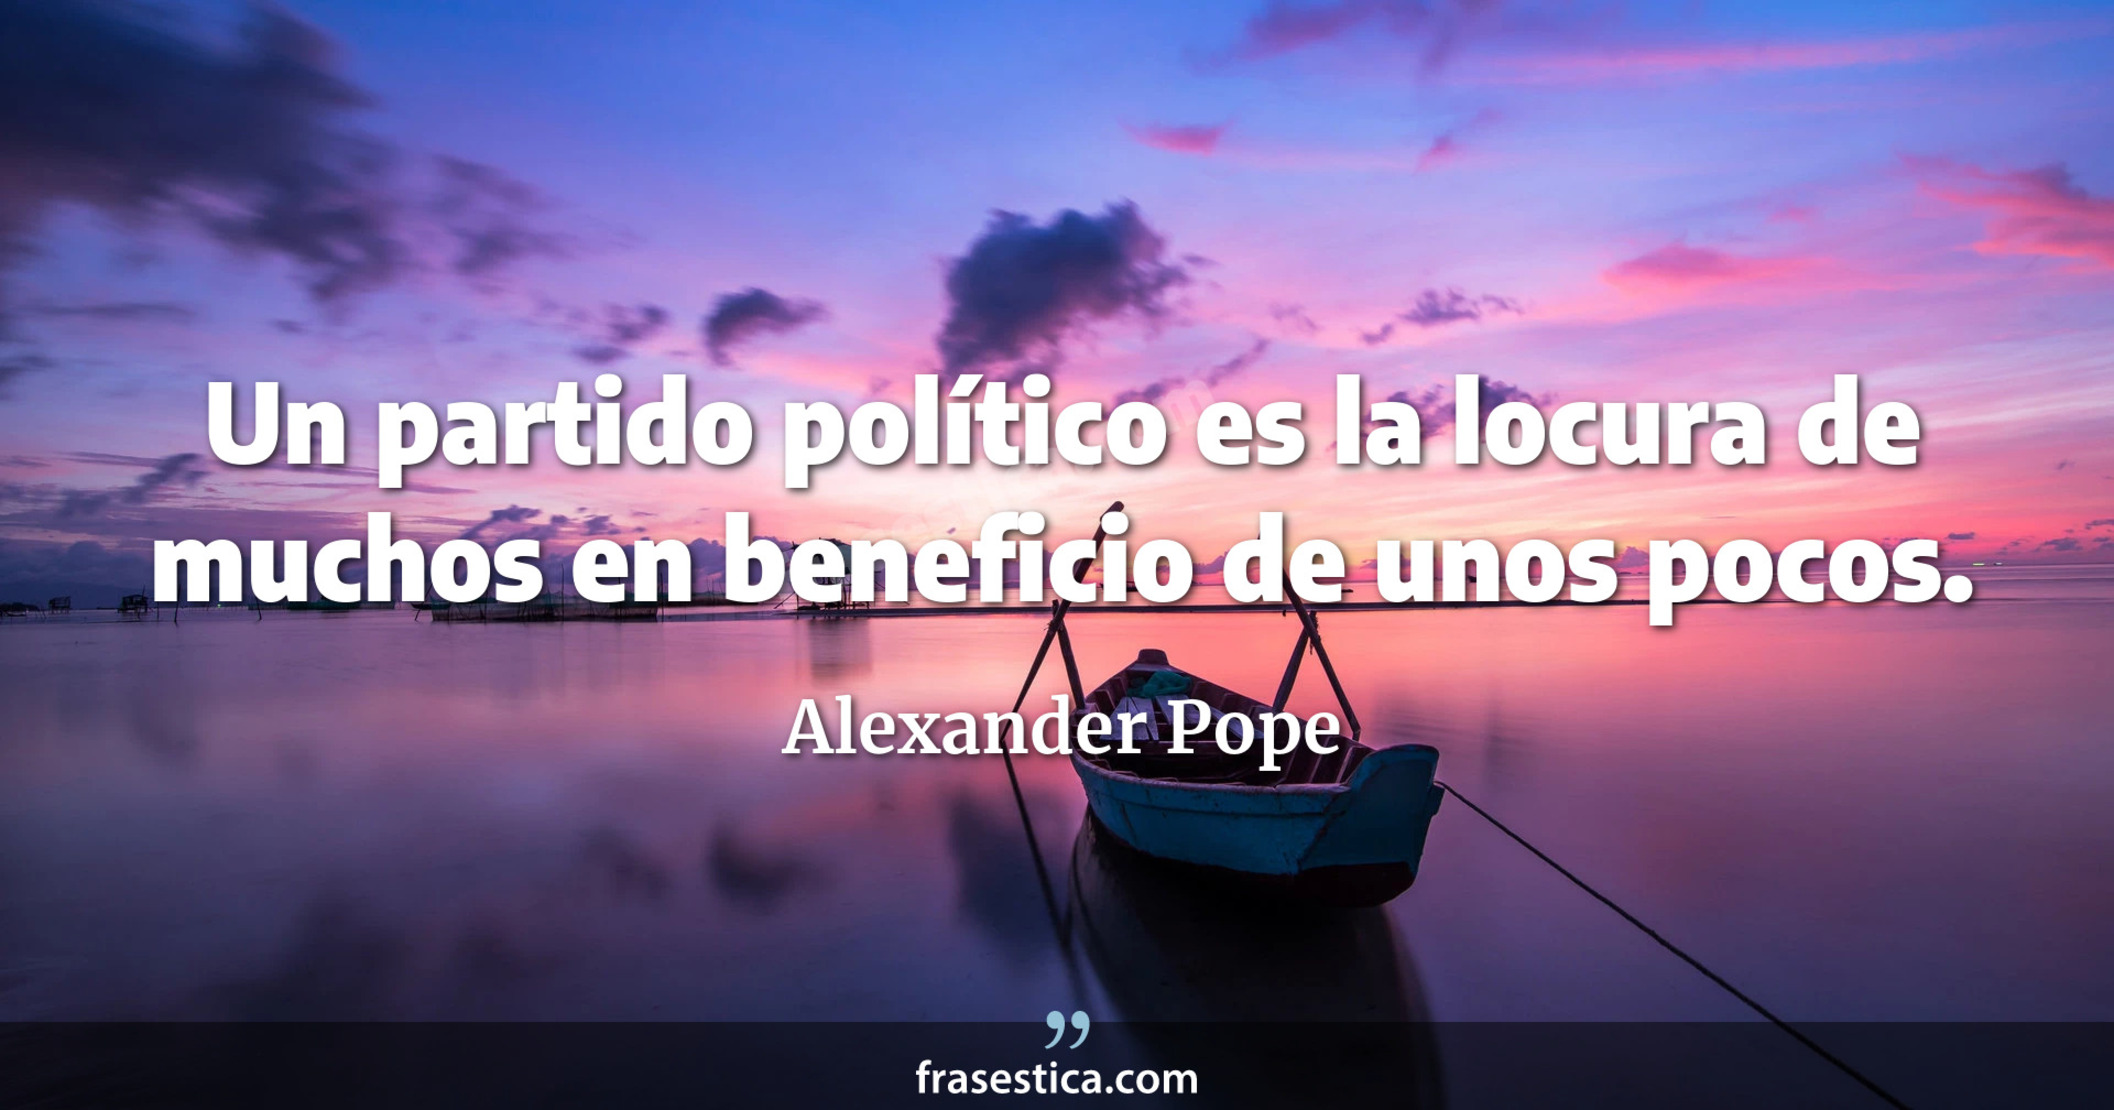 Un partido político es la locura de muchos en beneficio de unos pocos. - Alexander Pope